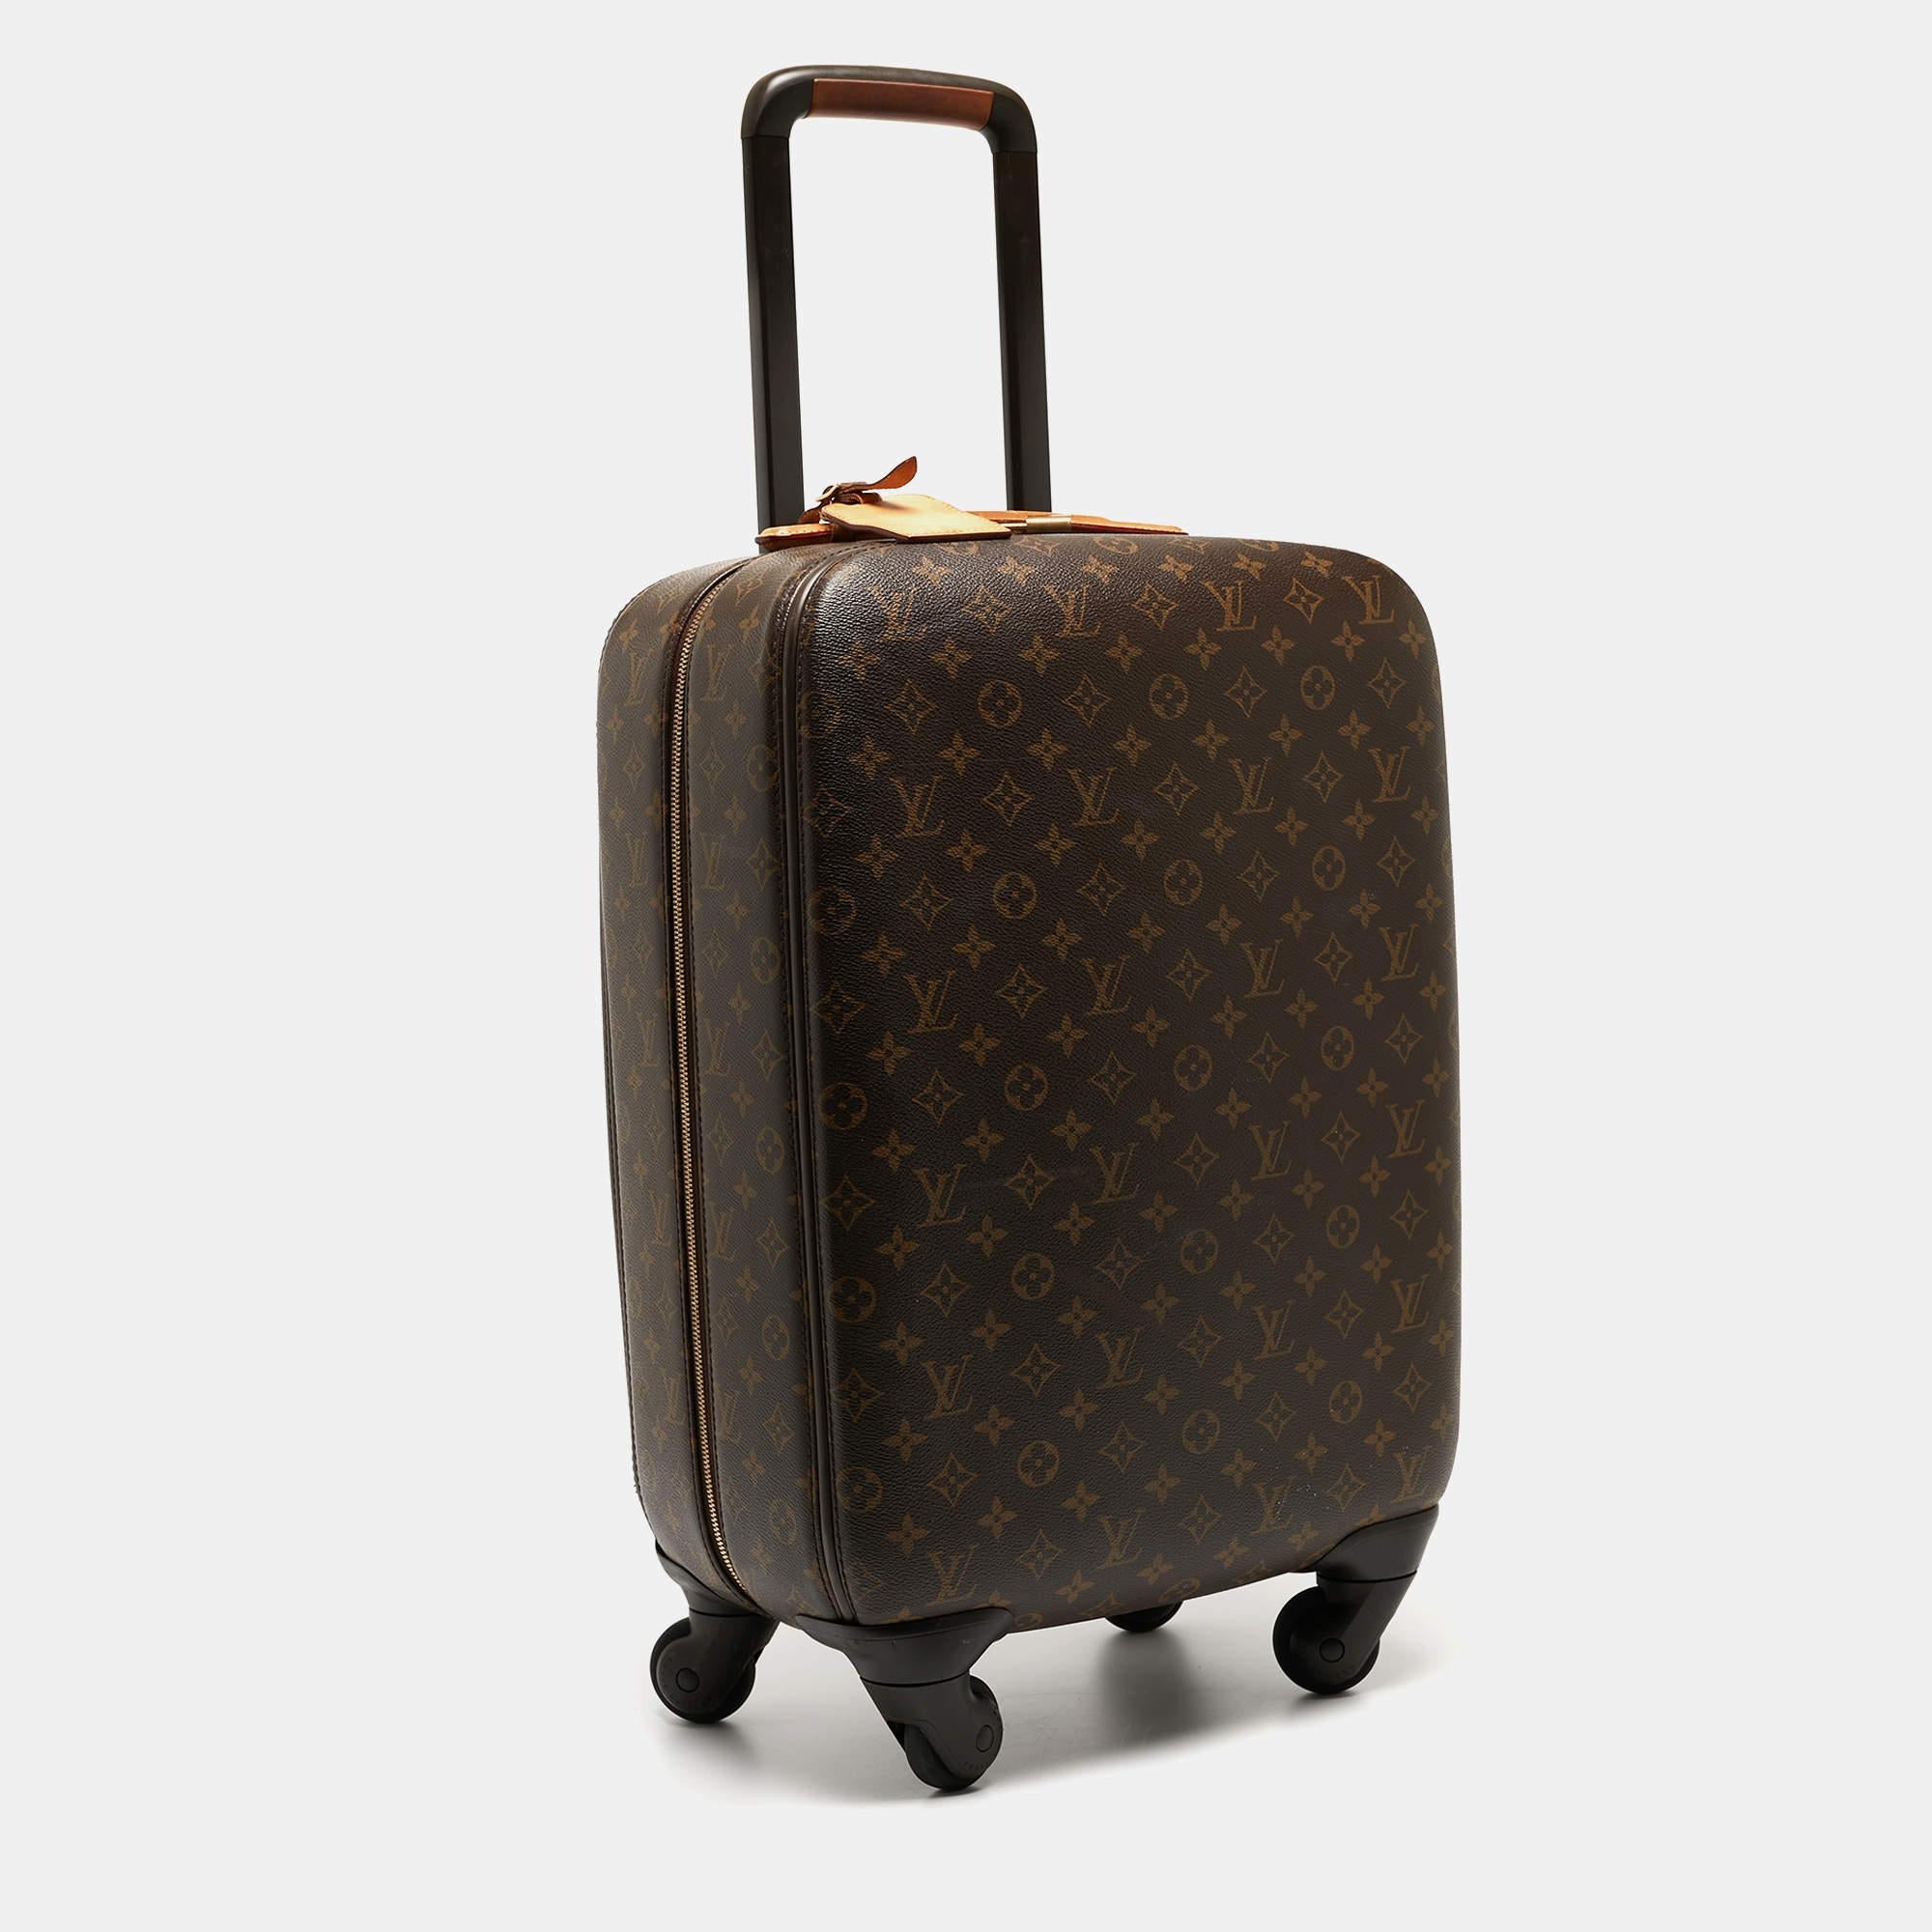 Reisen Sie mit diesem Louis Vuitton-Koffer an alle Orte, die Ihr Herz begehrt. Er ist aus hochwertigen MATERIALEN gefertigt und hat ein geräumiges Format. Robust und ultramobil gleitet er auf seinen Rädern dahin, während sein raffiniert gestalteter